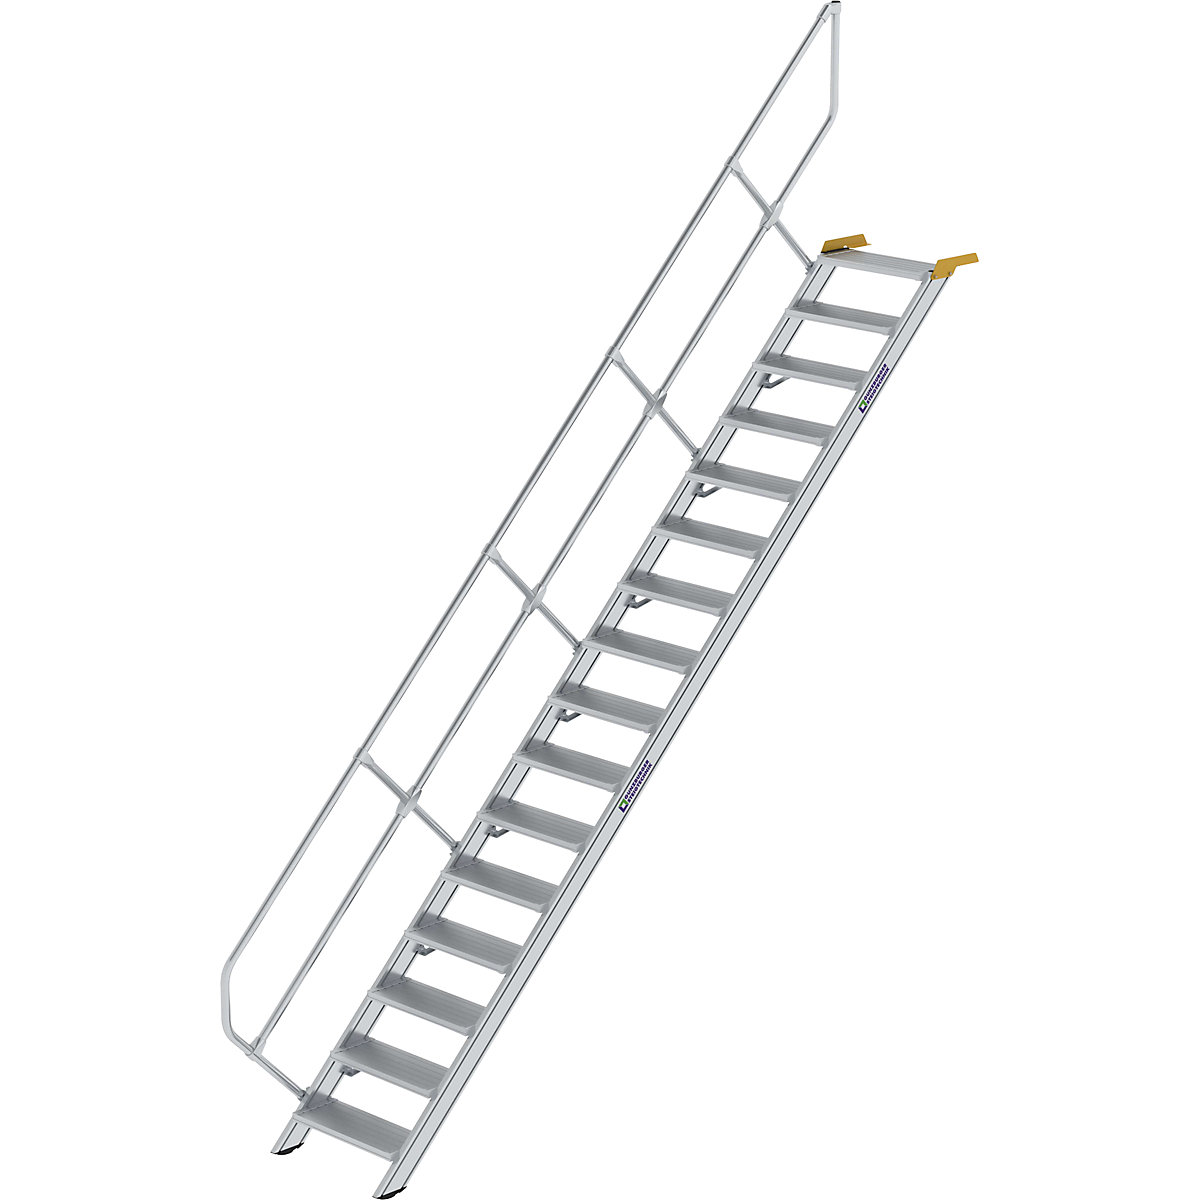 MUNK Industrietreppe, Alu-Stufen, Stufenbreite 600 mm, 16 Stufen